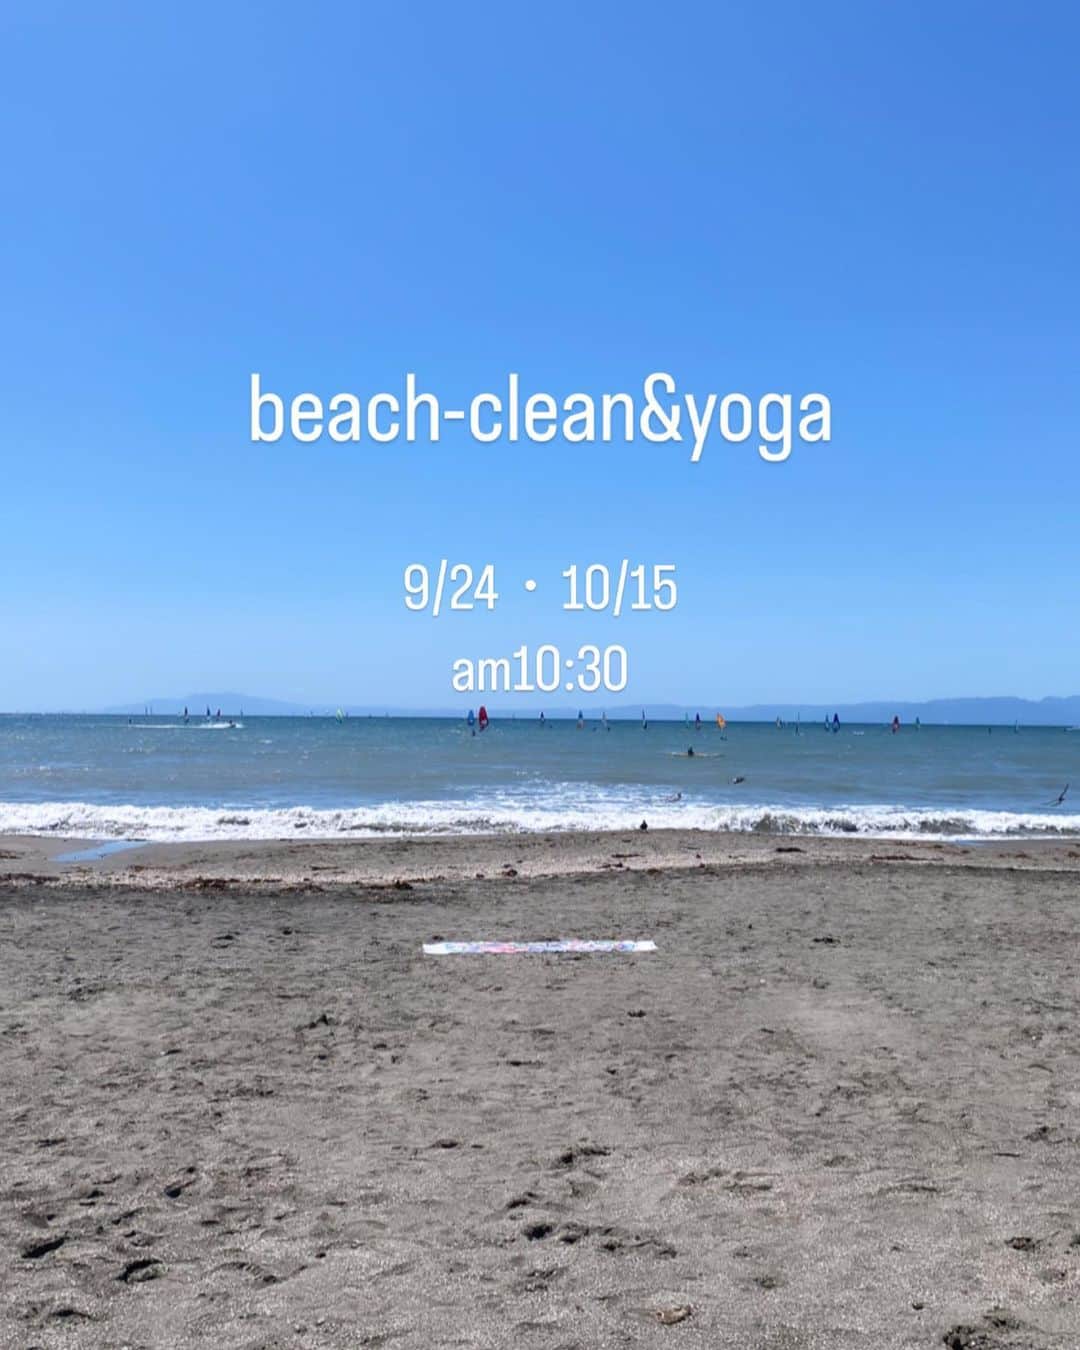 安斉奈緒美のインスタグラム：「秋のbeach yoga開催決定〜🏖🧘🏽‍♂️🧘🏼‍♀️  9/24,10/15 この時期のビーチは過ごしやすくなります😇 心地よい波の音を感じながら、海沿いで開催します🏖  海風を感じながらのヨガは心を静め、自然と一体化しながらリラックス😌そして心身をリフレッシュさせてくれます😮‍💨  ヨガ前はビーチクリーンを行なっています🐚こちらは自由参加です😊 ビーチに打ち上げられたゴミを集め、自然への感謝の気持ちを込めながら、ビーチを歩きながら行います😌  今回参加者は10名様限定となりますのでご予約はお早めにお願いします😌  気づいたら夏が終わって海に行きそびれた方、夏の暑さで海に来れなかった方、前回予定が合わなかった方、初めての方、どんな理由でも参加可能です😘  ビーチをきれいにし、ご自身の心、身体も内側から美しく、リフレッシュできるそんな時間を共に過ごしましょう😘 皆様のご参加をお待ちしています！  詳細確認、参加予約フォームはプロフィールのリンクから飛べます✈️  ○日時○ 9/24(日)、10/15(日) 10:00~beach clean 10:30~yoga 11:30~free  ○開催場所○ 逗子海岸 ※集合場所は前日にご案内メールを送ります。  ○参加費○ ￥3500(税込)  キャンセルはキャンセルポリシーをご確認ください。 ※悪天候中止 ※最低遂行人数４名  #ビーチヨガ #逗子海岸 #逗子海岸ビーチヨガ #ビーチクリーン #逗子海岸ビーチクリーム #ヨガインストラクター」